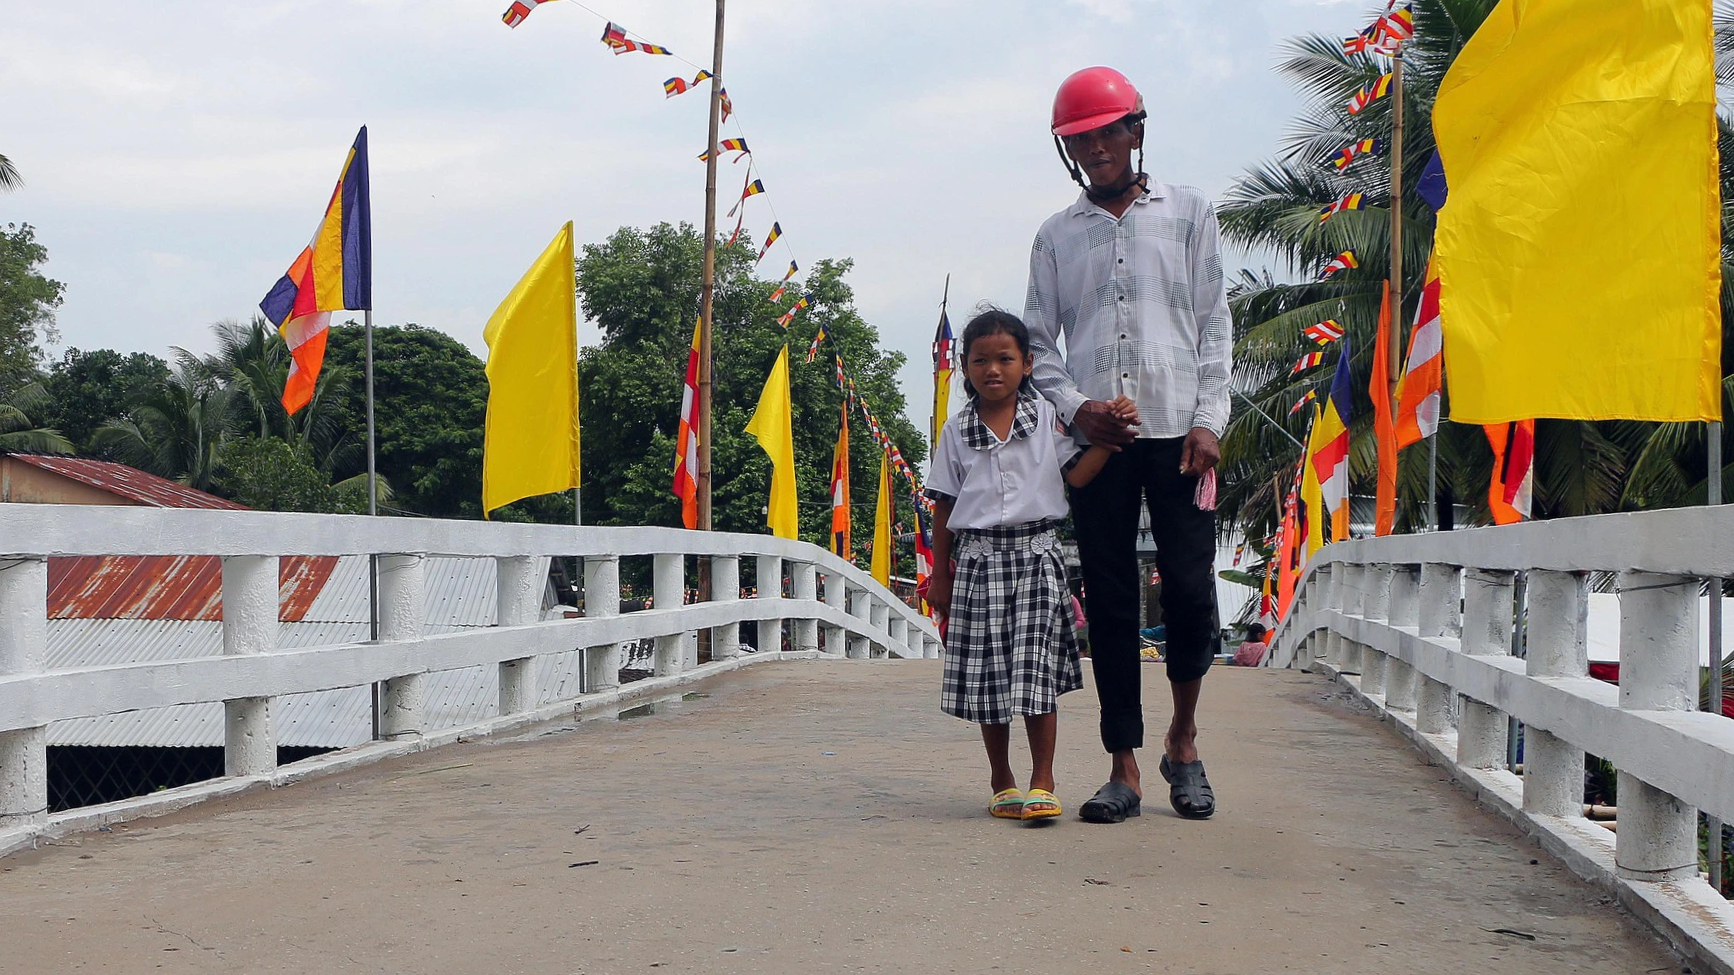 Xã hội hóa trong xây dựng cầu nông thôn vùng dân tộc Khmer ở Sóc Trăng - Ảnh 1.